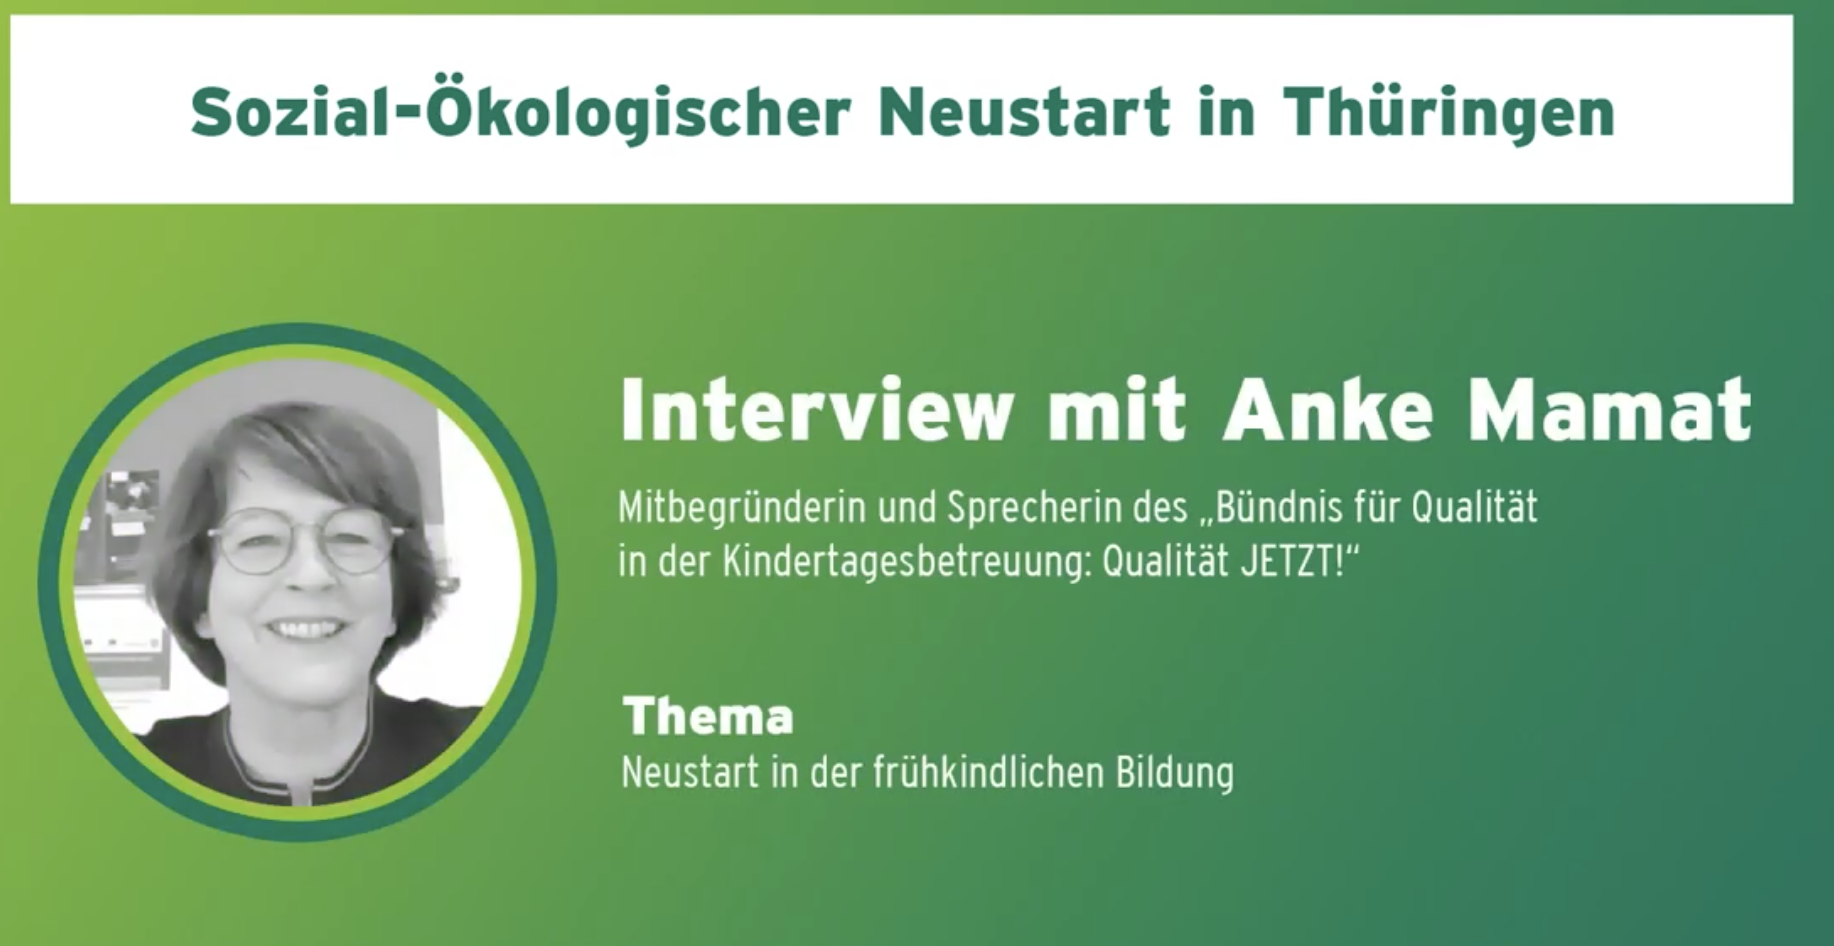 You are currently viewing Neustart in der frühkindlichen Bildung in Thüringen – Interview mit Anke Mamat